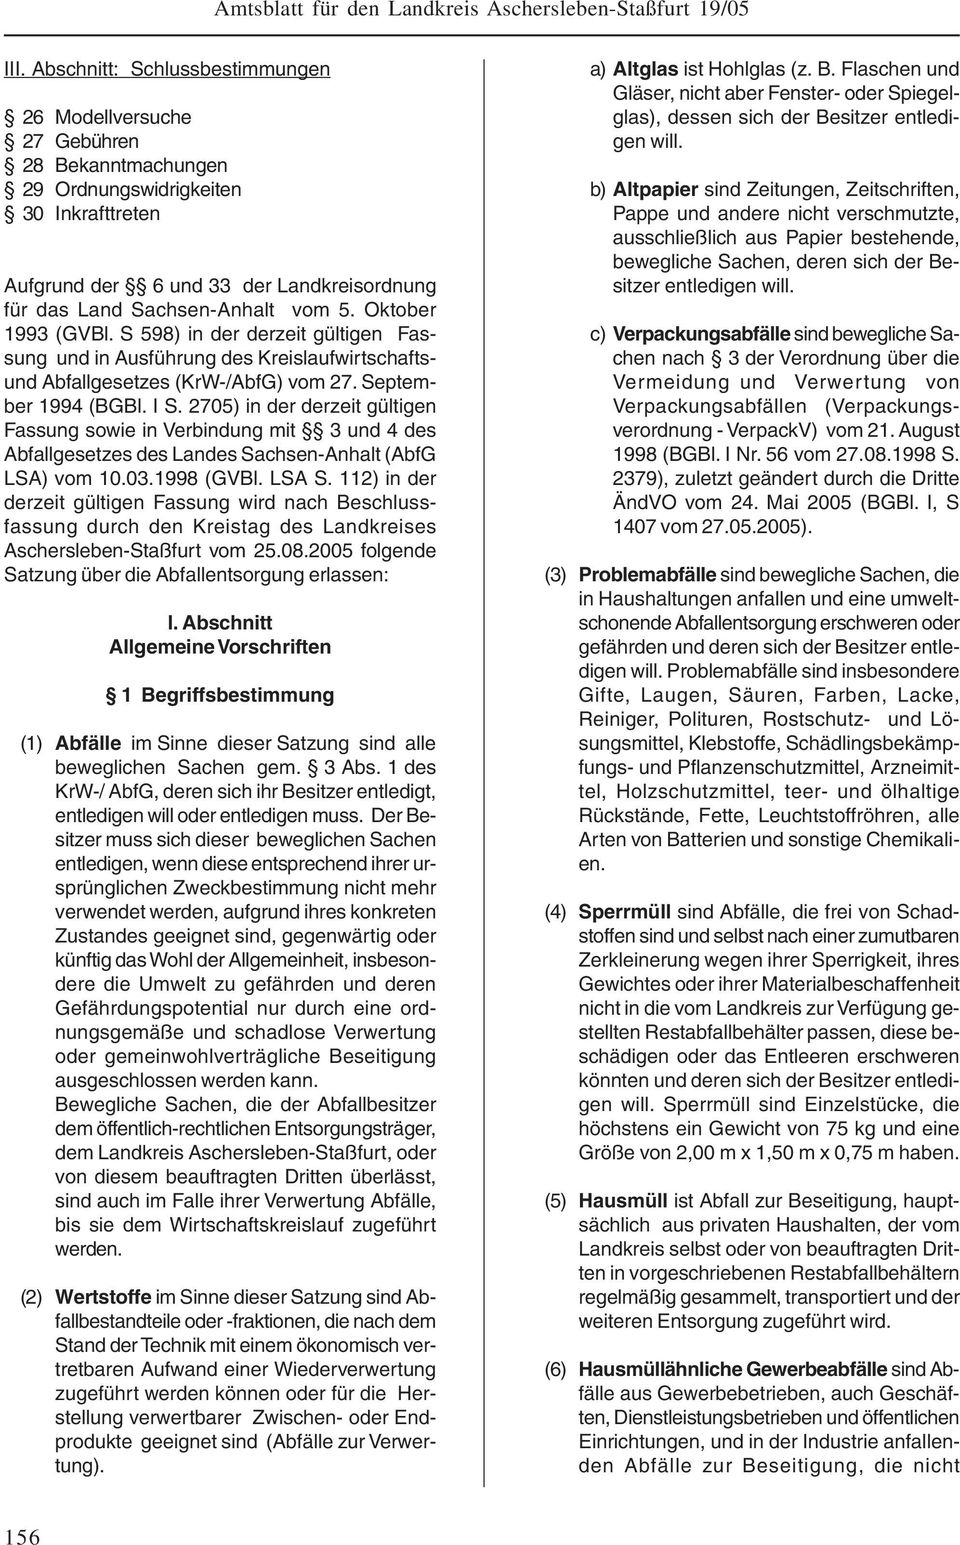 2705) in der derzeit gültigen Fassung sowie in Verbindung mit 3 und 4 des Abfallgesetzes des Landes Sachsen-Anhalt (AbfG LSA) vom 10.03.1998 (GVBl. LSA S.